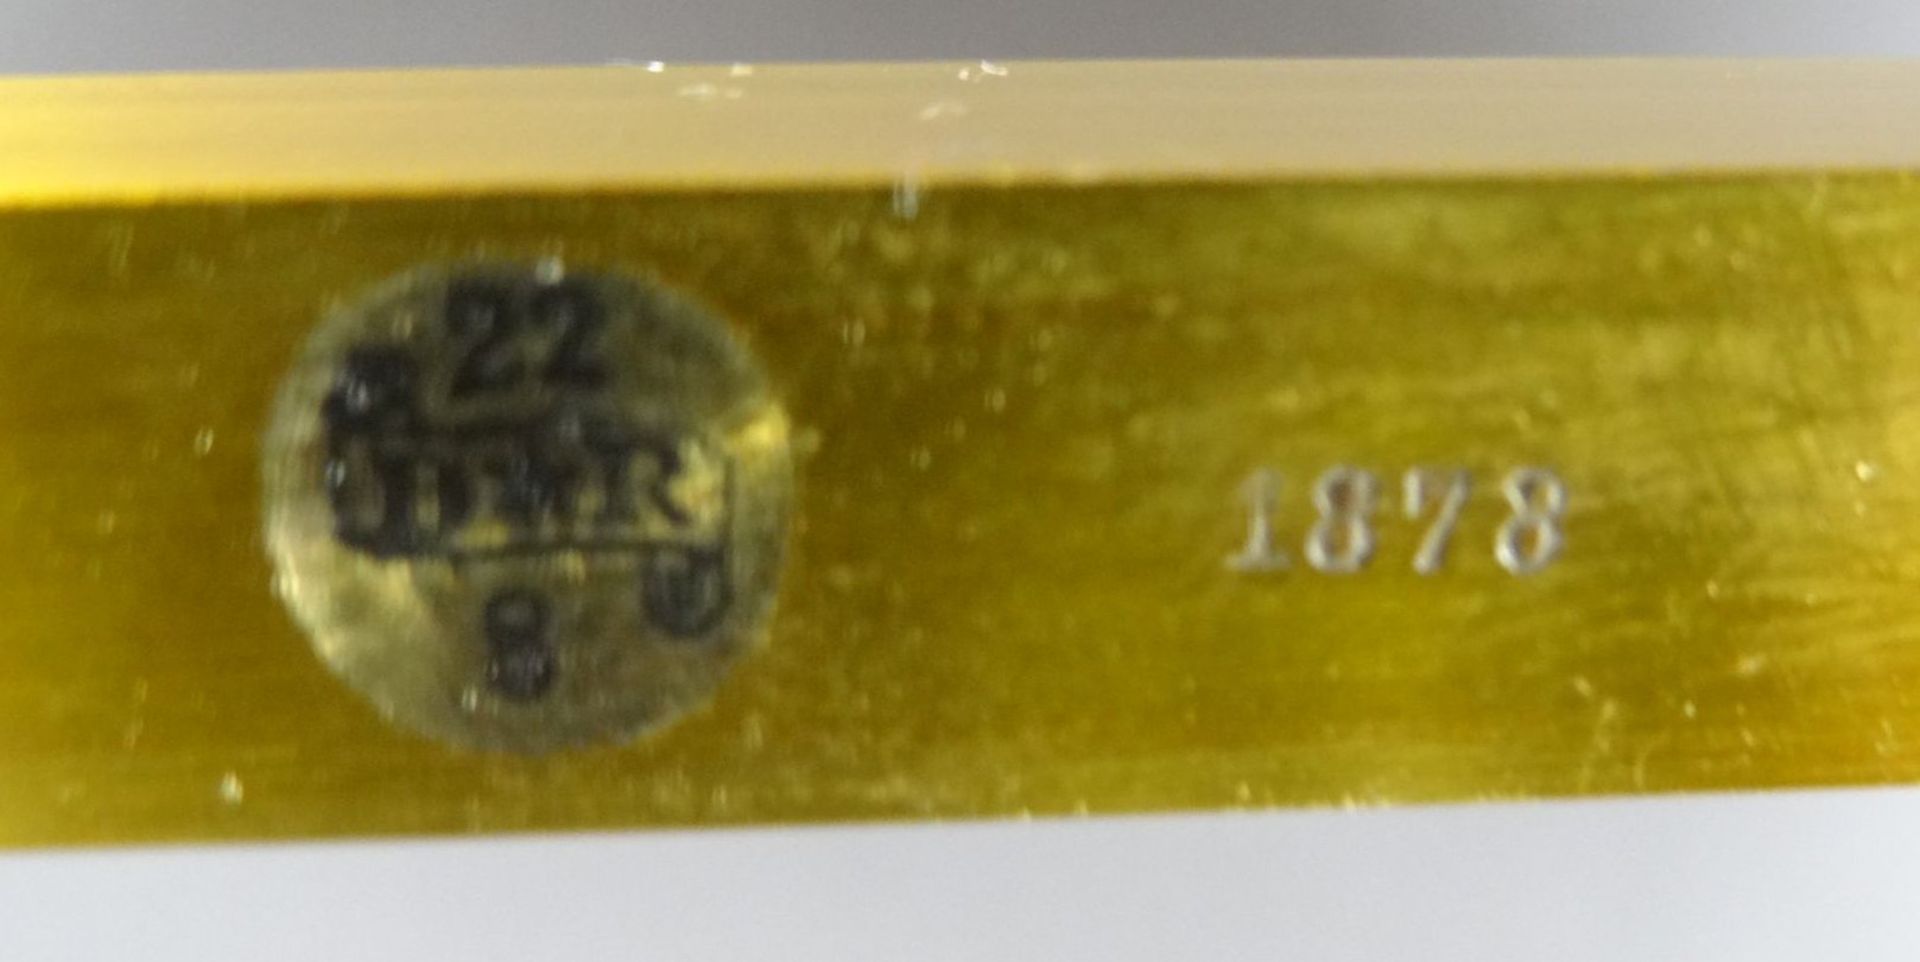 Apothekenwaage bis 5 kg, Messing,dat. 1878, Eichstempel, H-50 cm, B-70 cm - Bild 7 aus 7